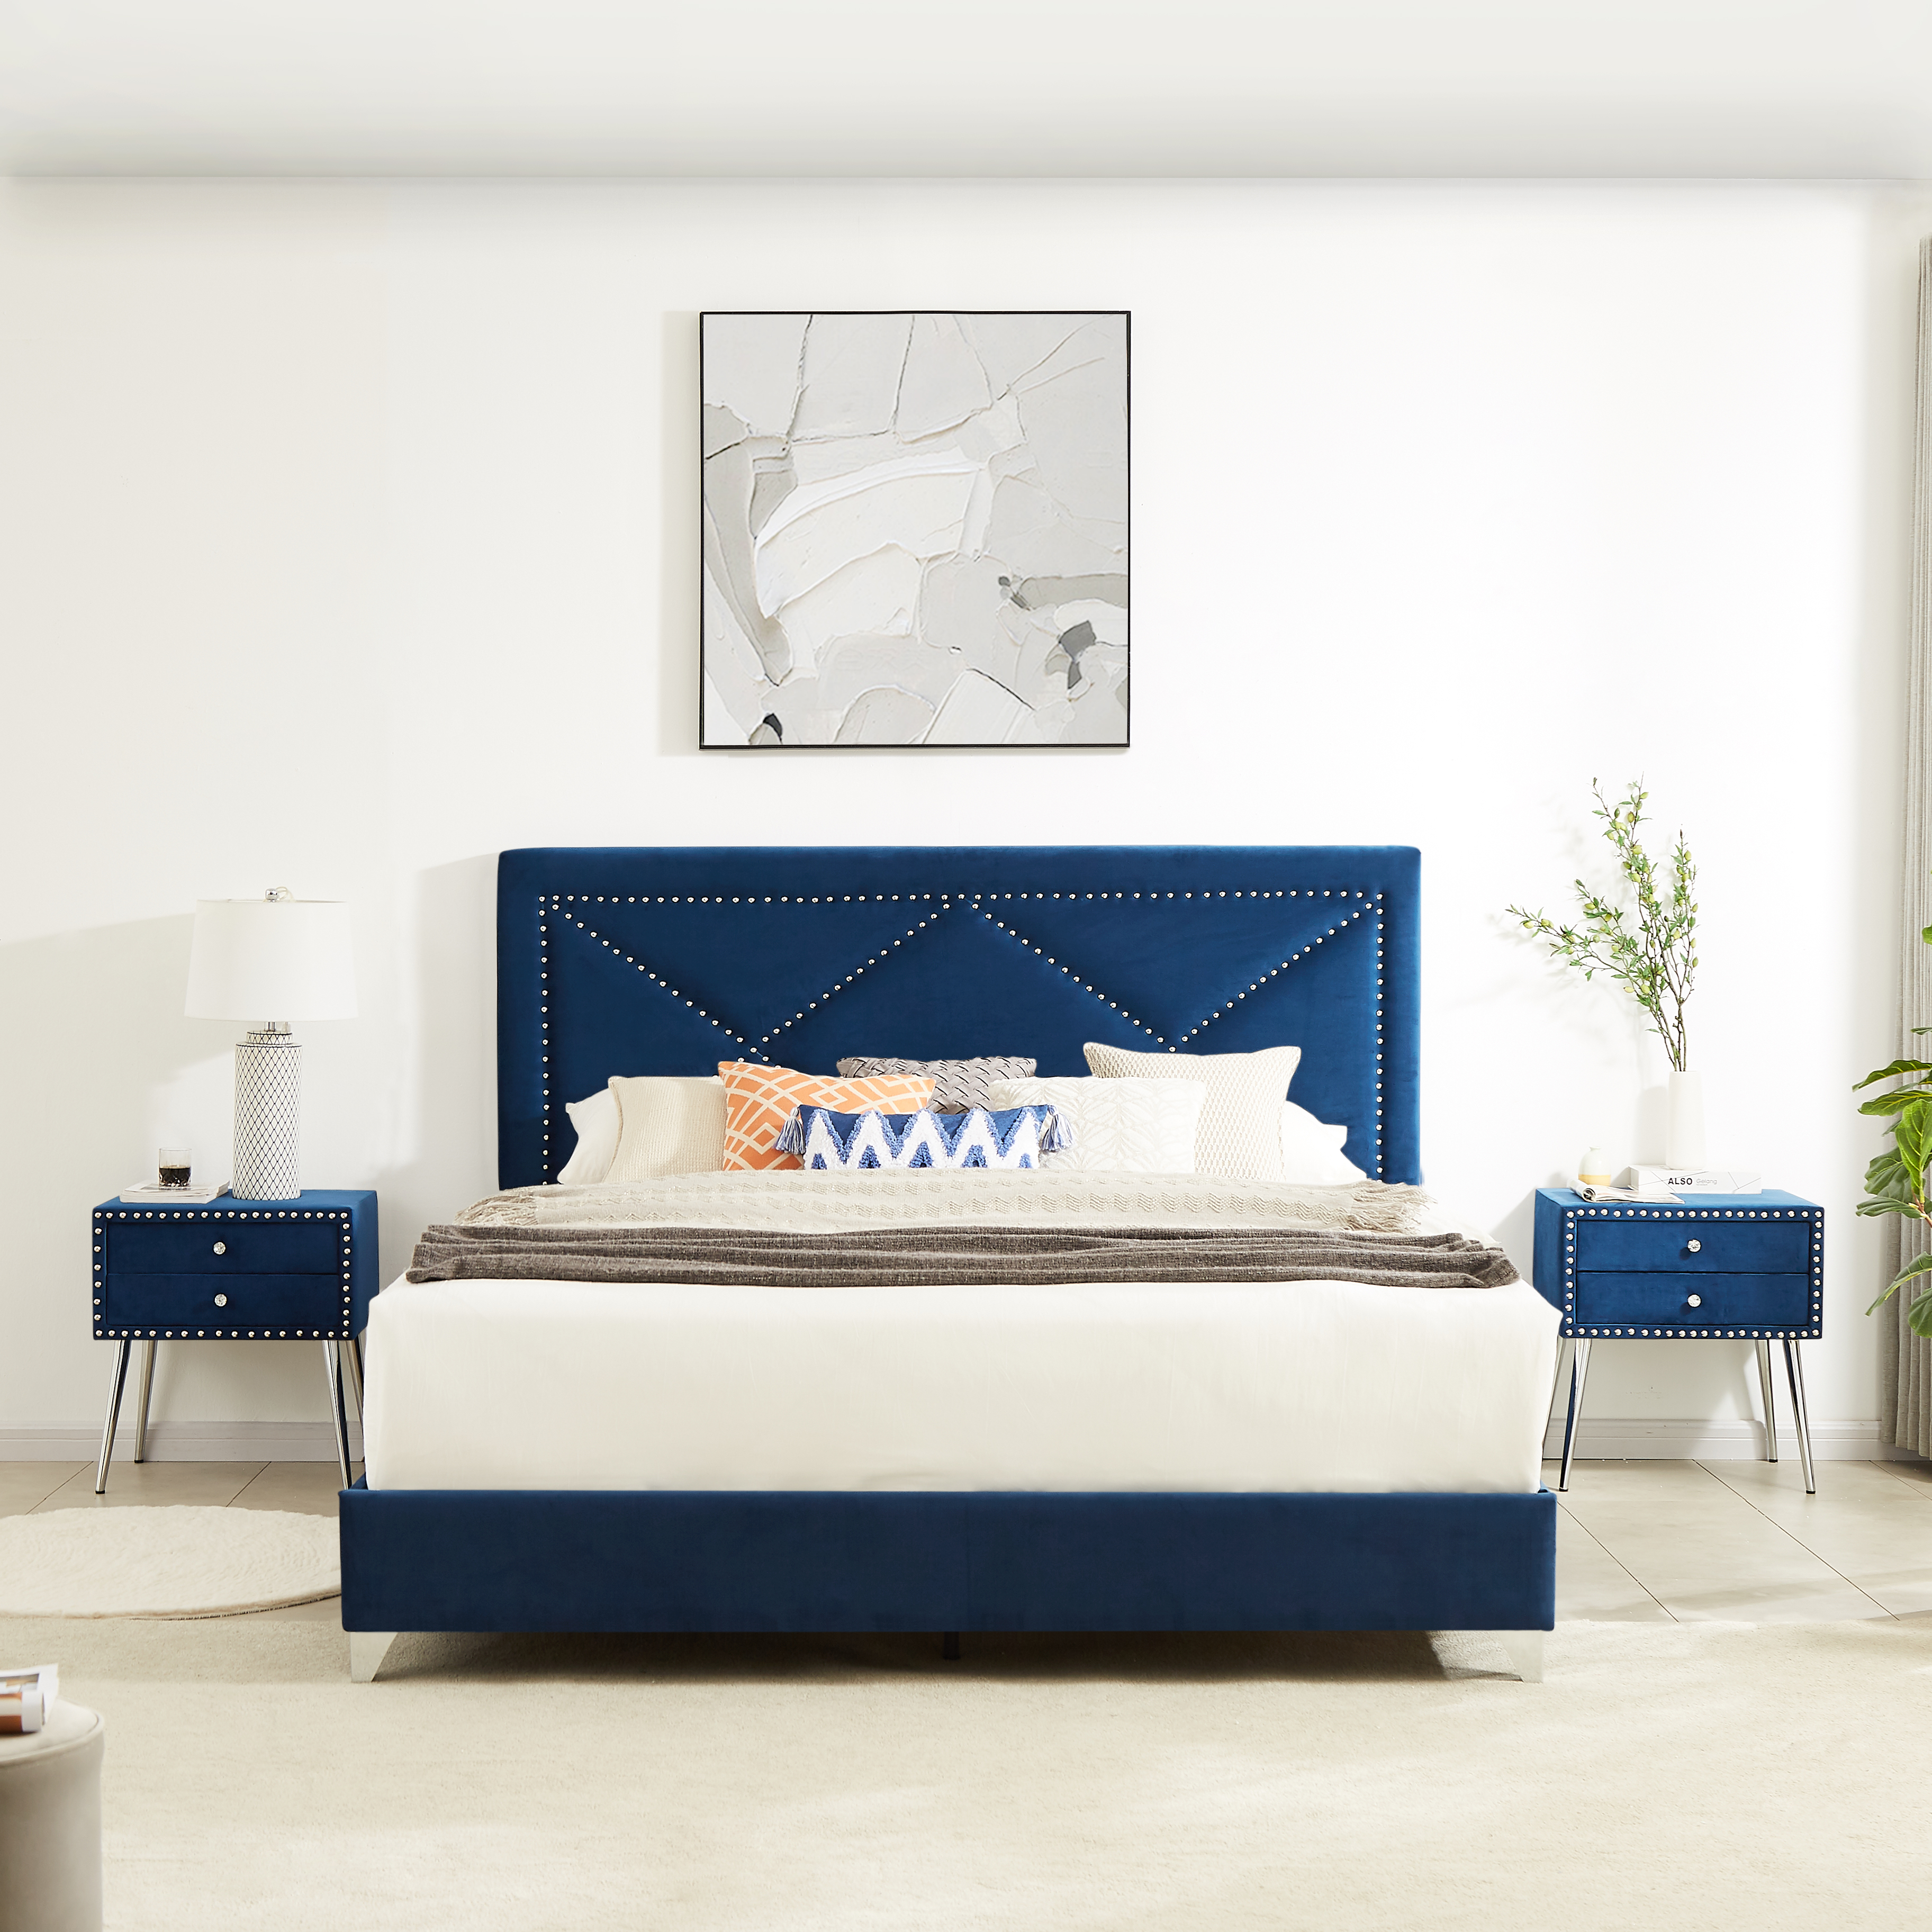 B109 Soft mattress with copper nail headboard, King Bed, strong wooden slats + metal support feet, Dark Blue Flannelette-CASAINC